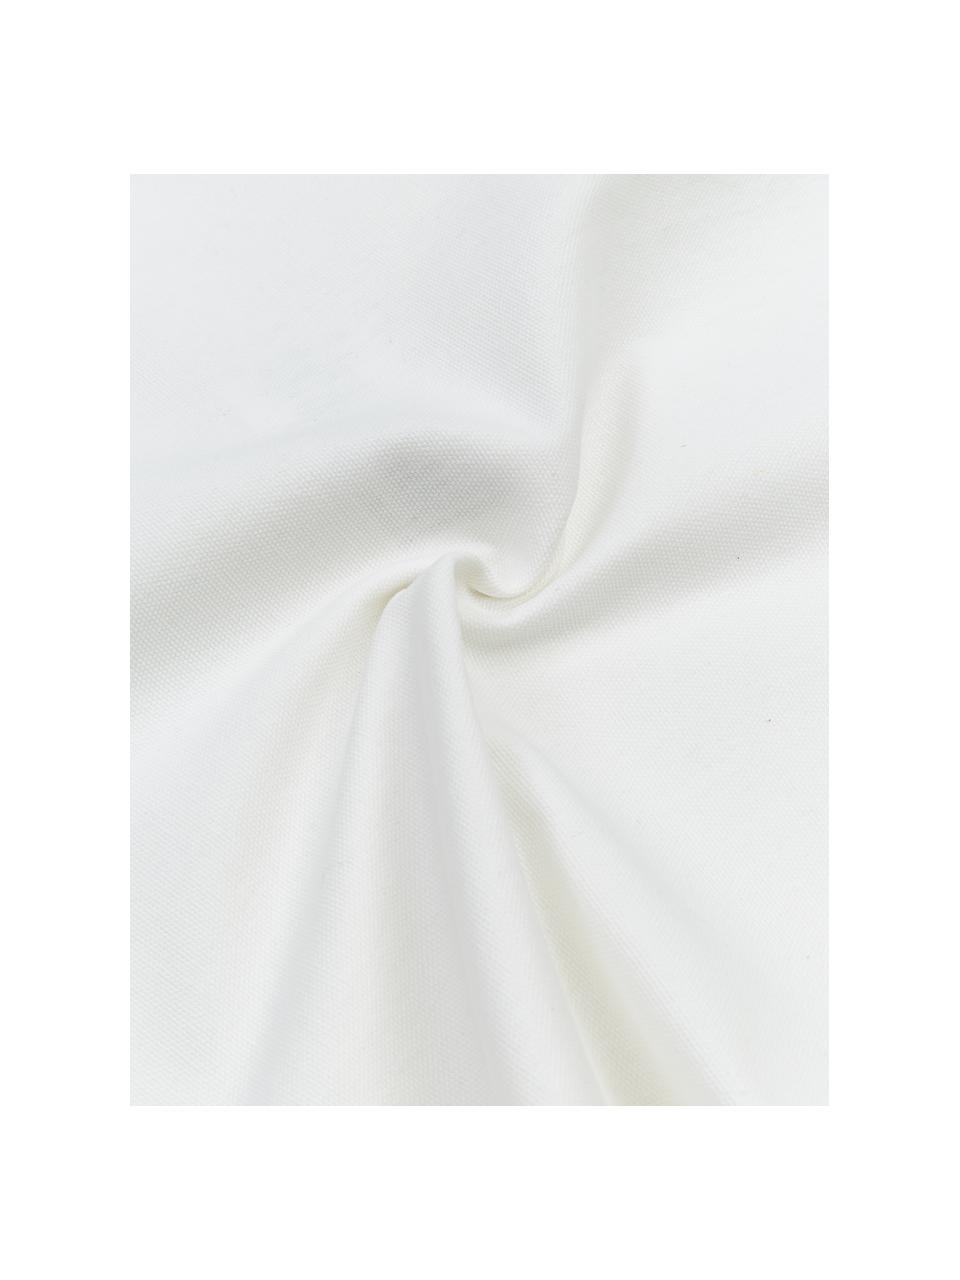 Kissenhülle Shylo in Weiss mit Quasten, 100% Baumwolle, Weiss, B 40 x L 40 cm